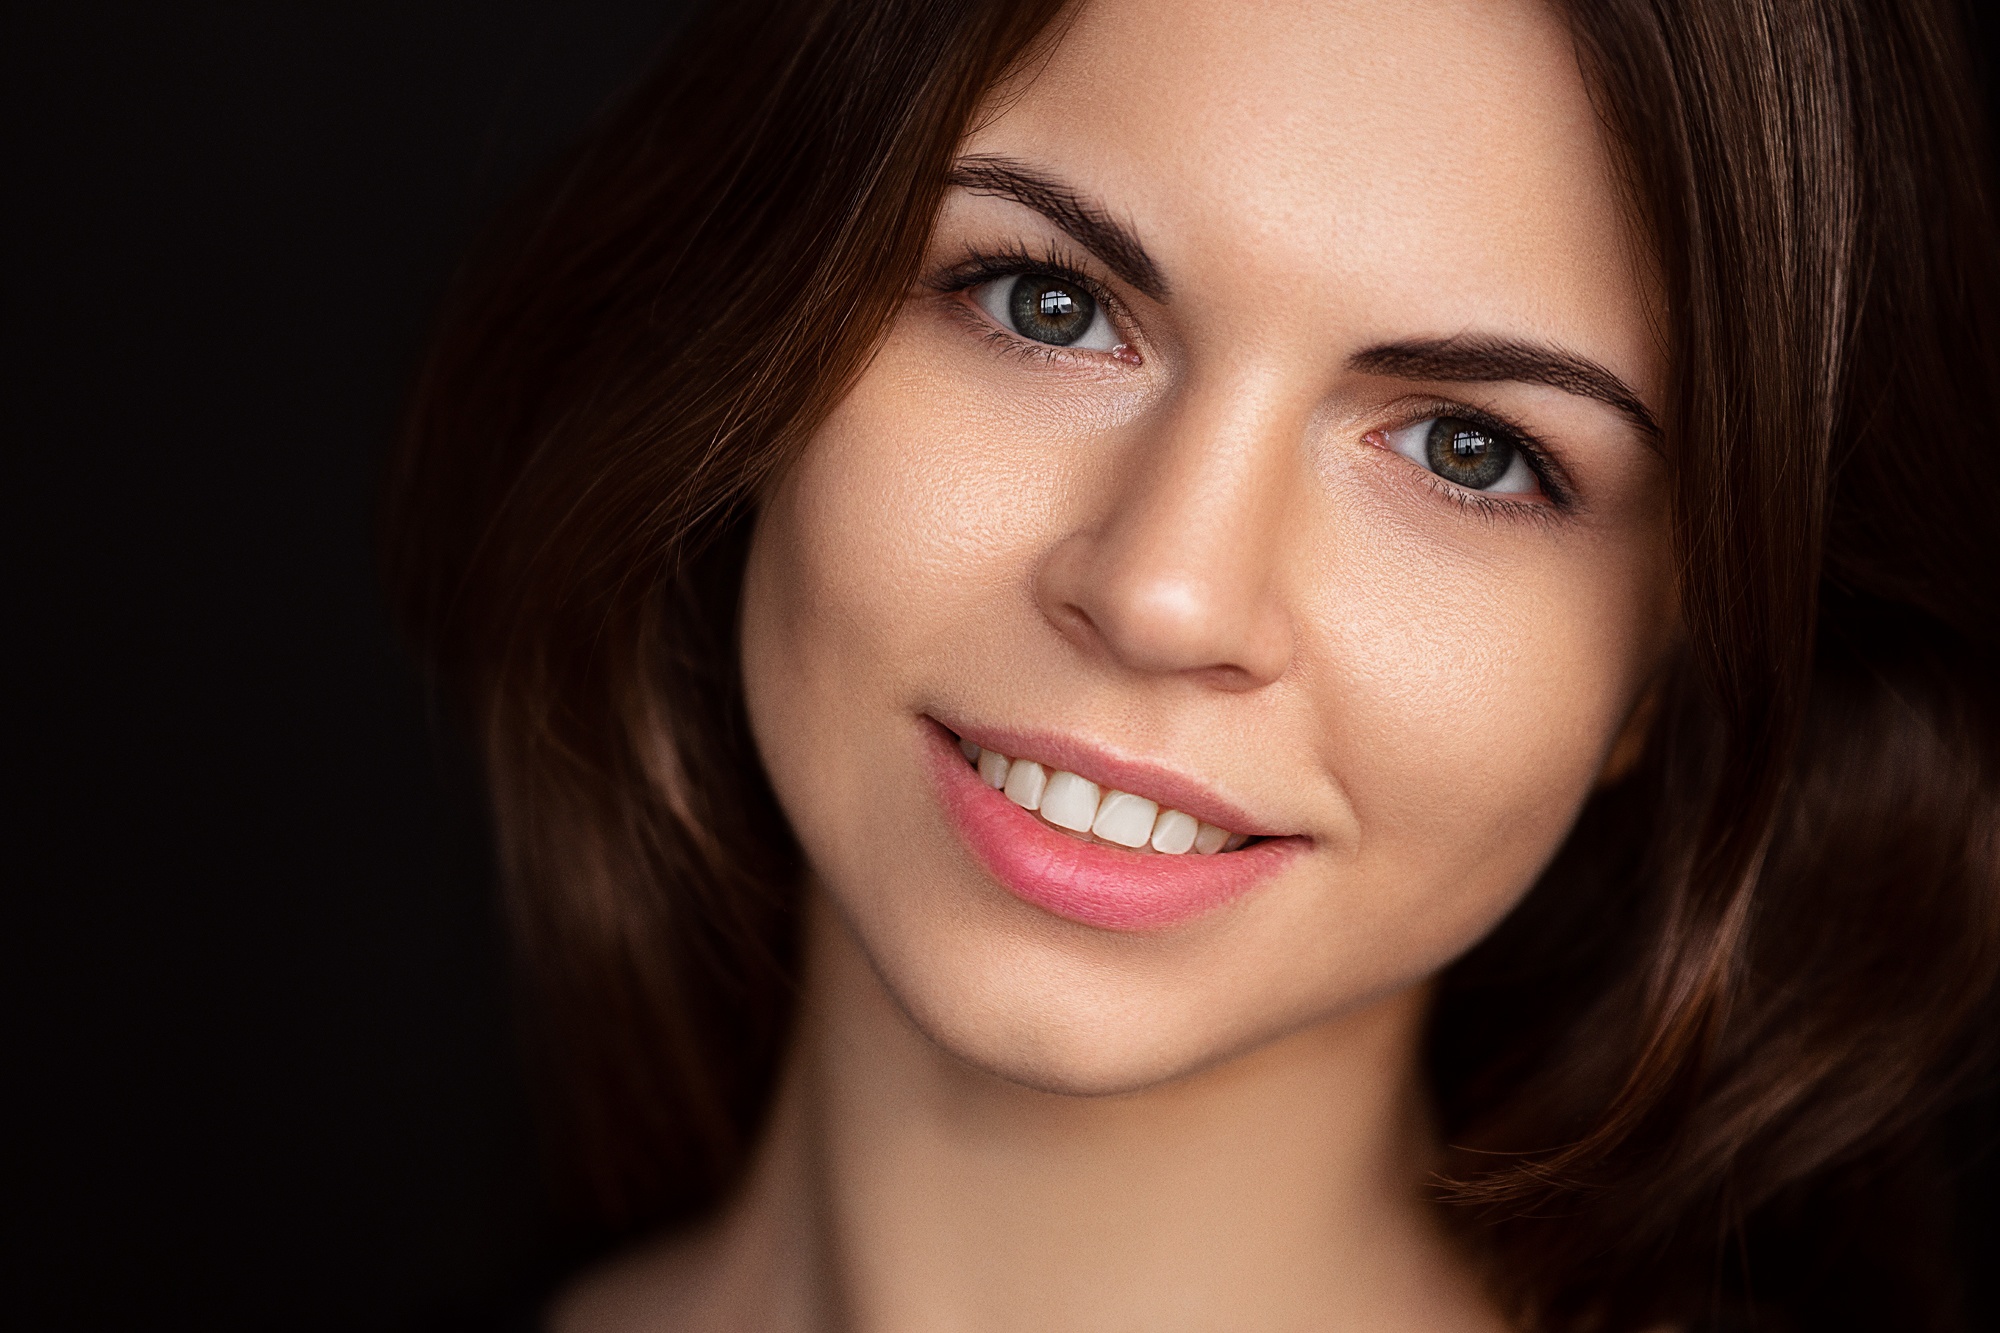 Andrey Zhukov Women Brunette Head Tilt Smiling Portrait Dark Background Face 2000x1333